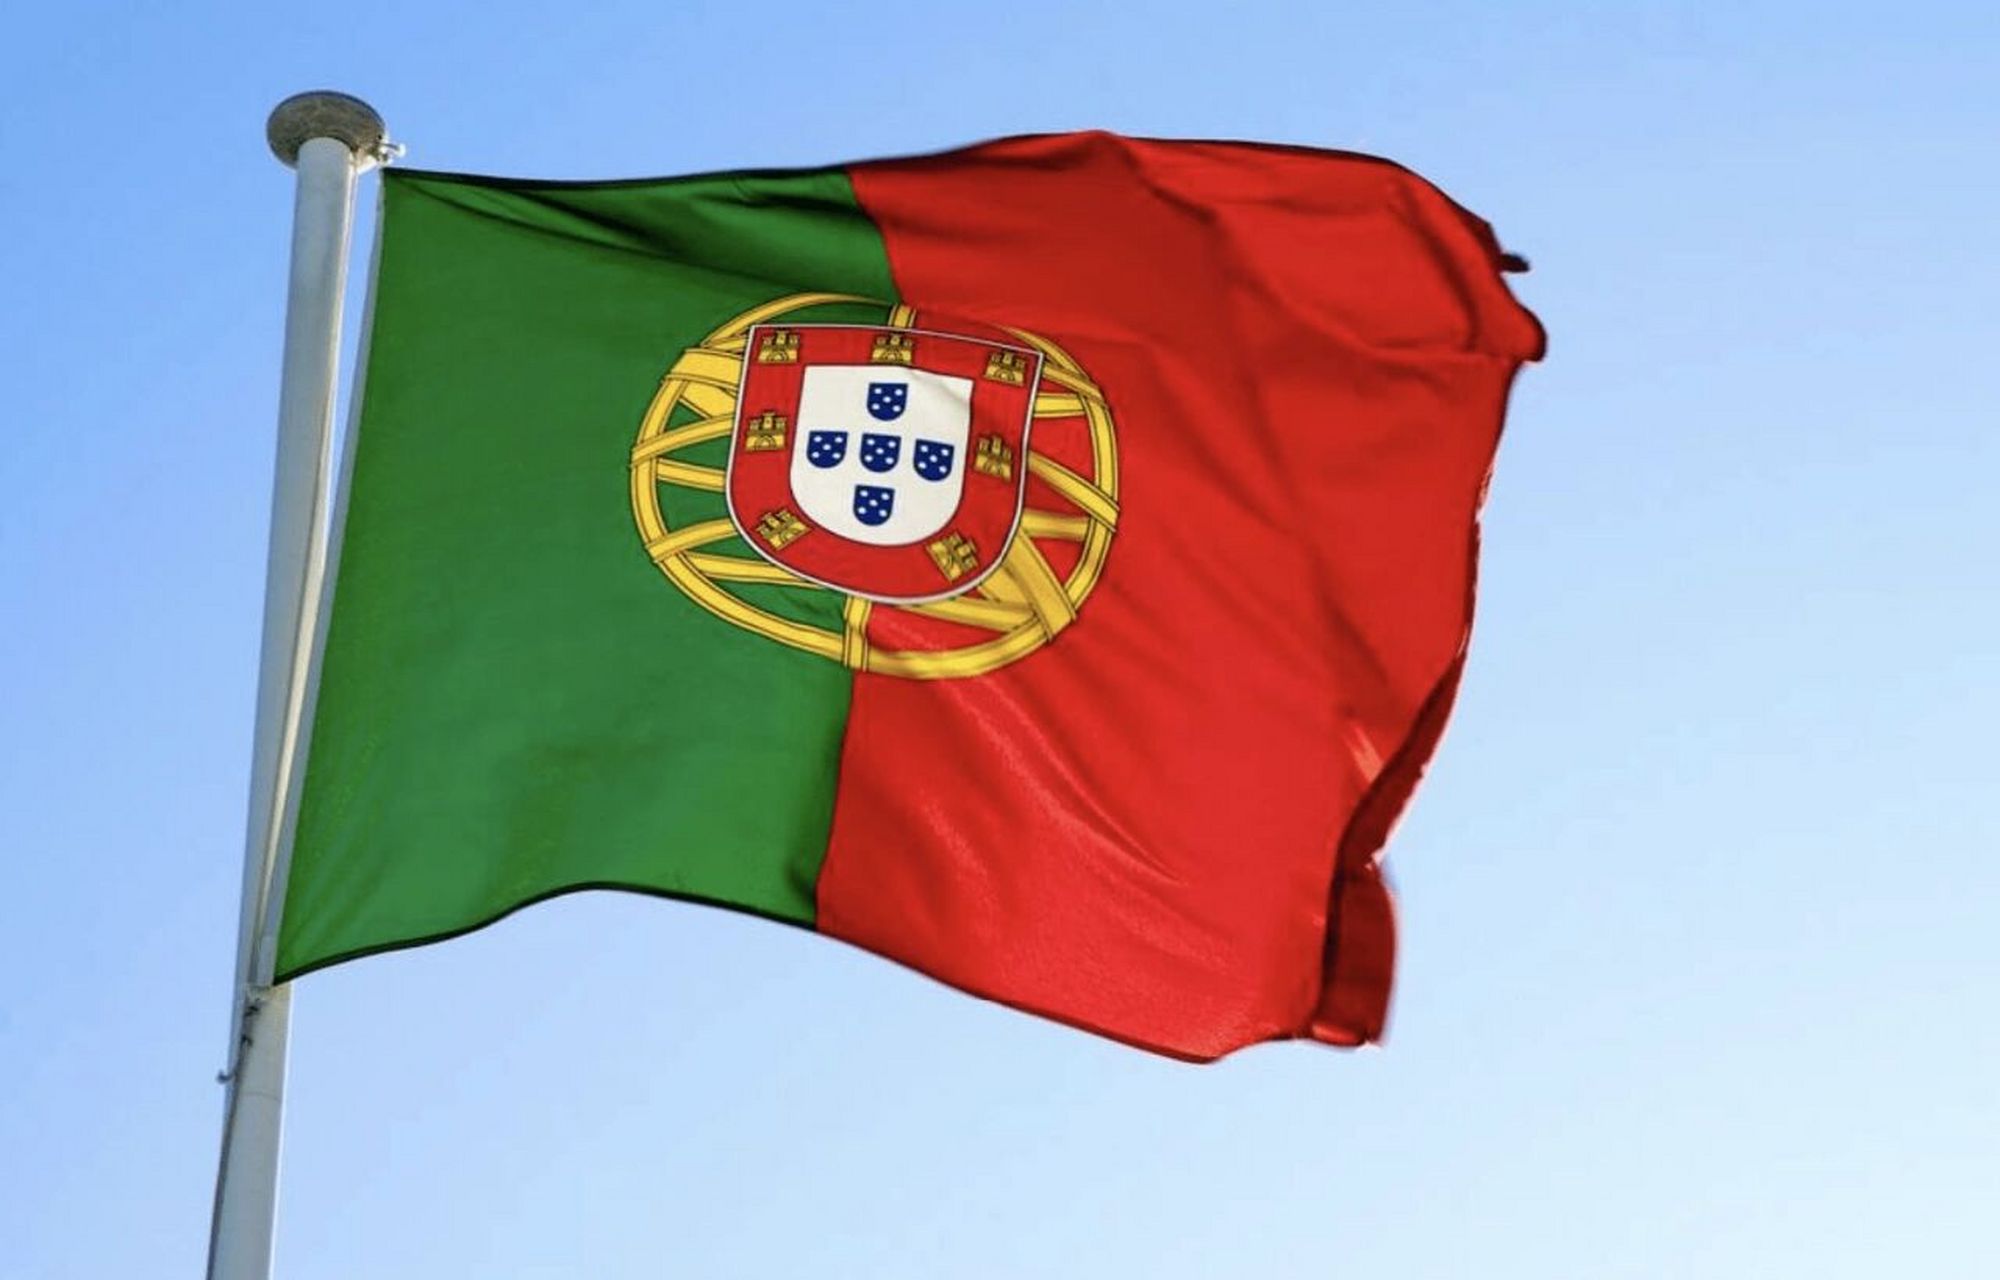 国旗:葡萄牙 中文名:葡萄牙共和国 葡萄牙语:república portuguesa